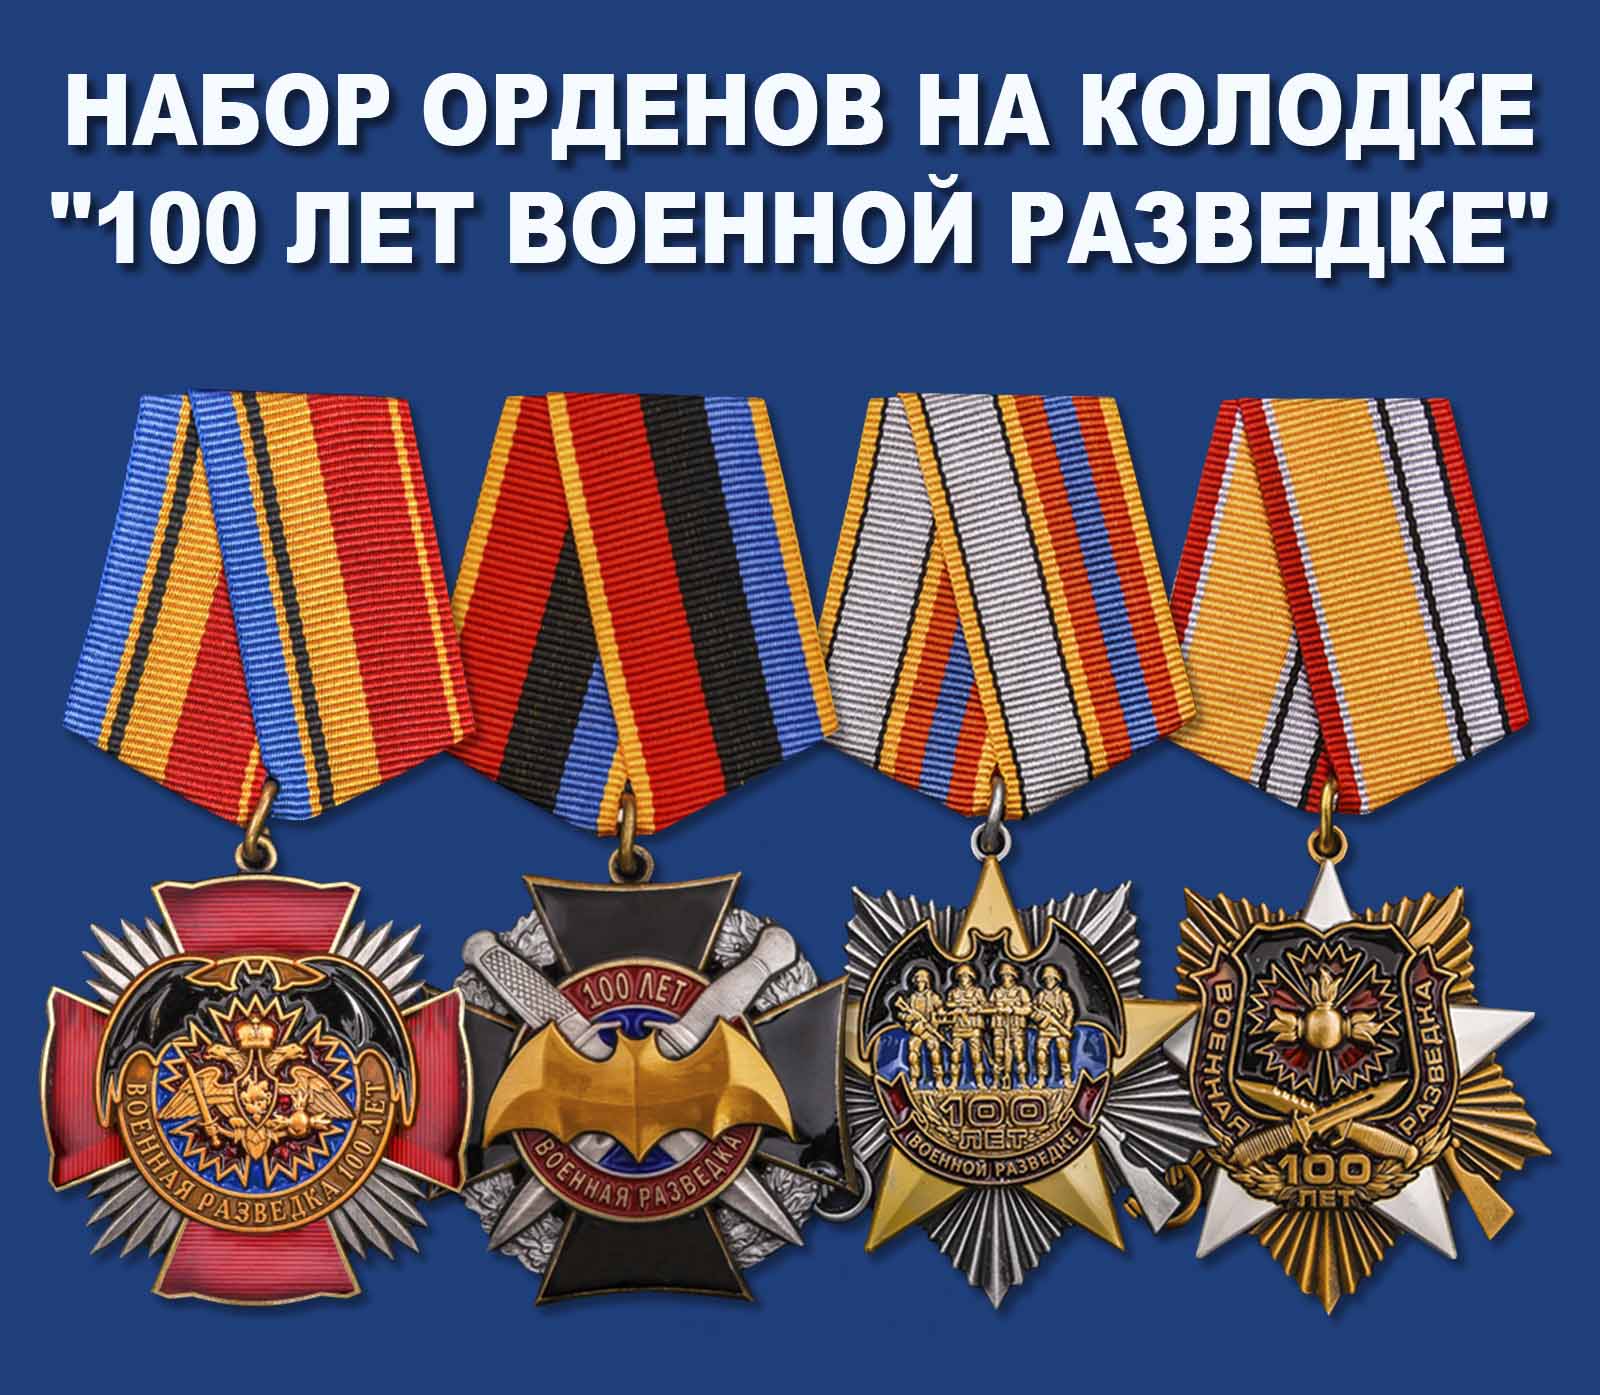 Купить набор орденов на колодке "100 лет Военной разведке"